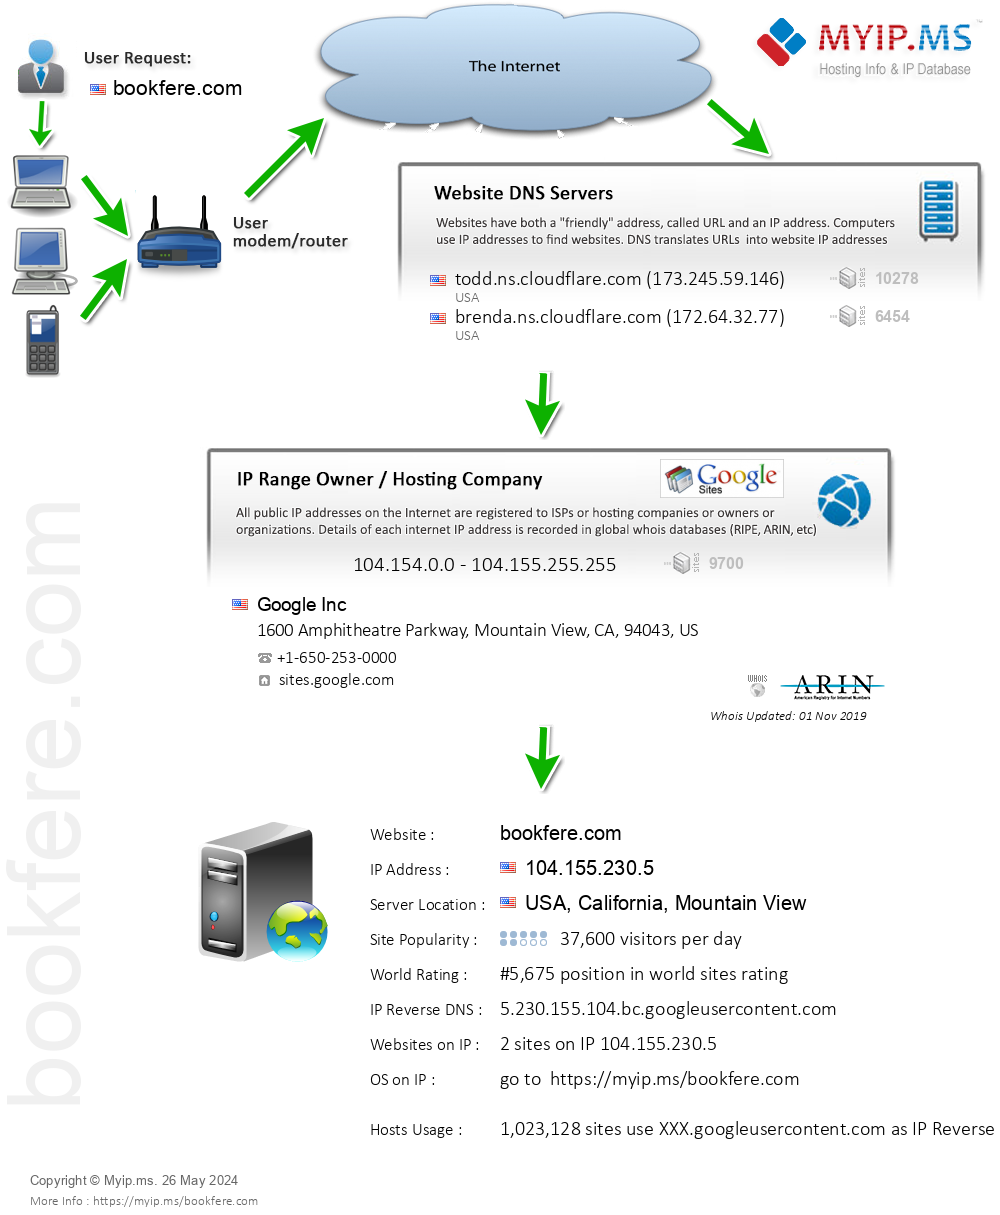 Bookfere.com - Website Hosting Visual IP Diagram